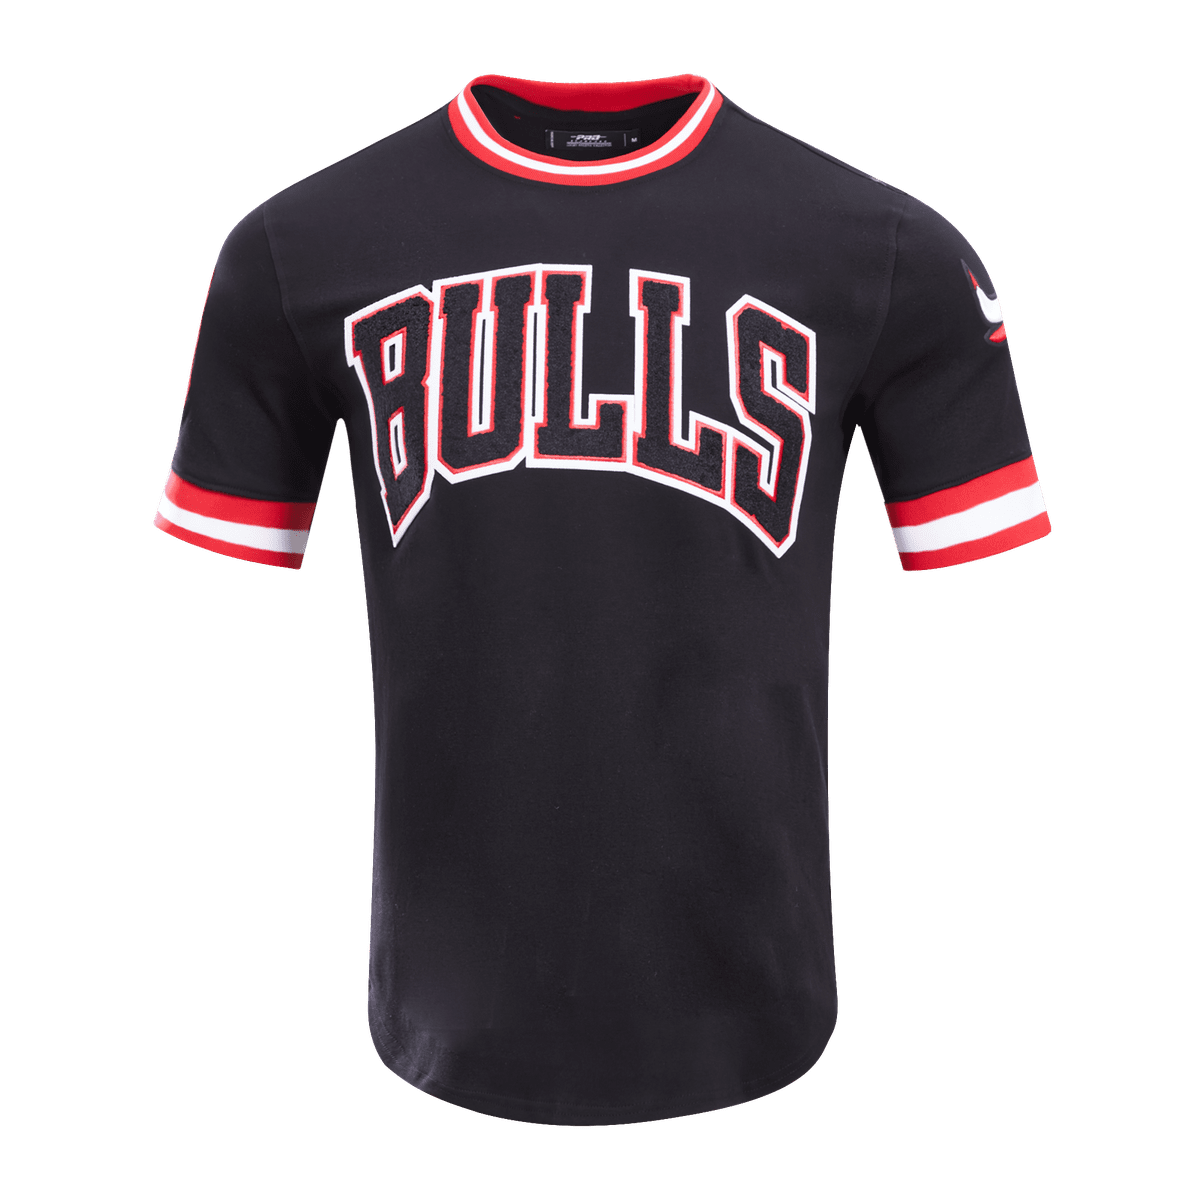 Men's Pro Standard Navy/Red Atlanta Braves Taping T-Shirt Size: Large